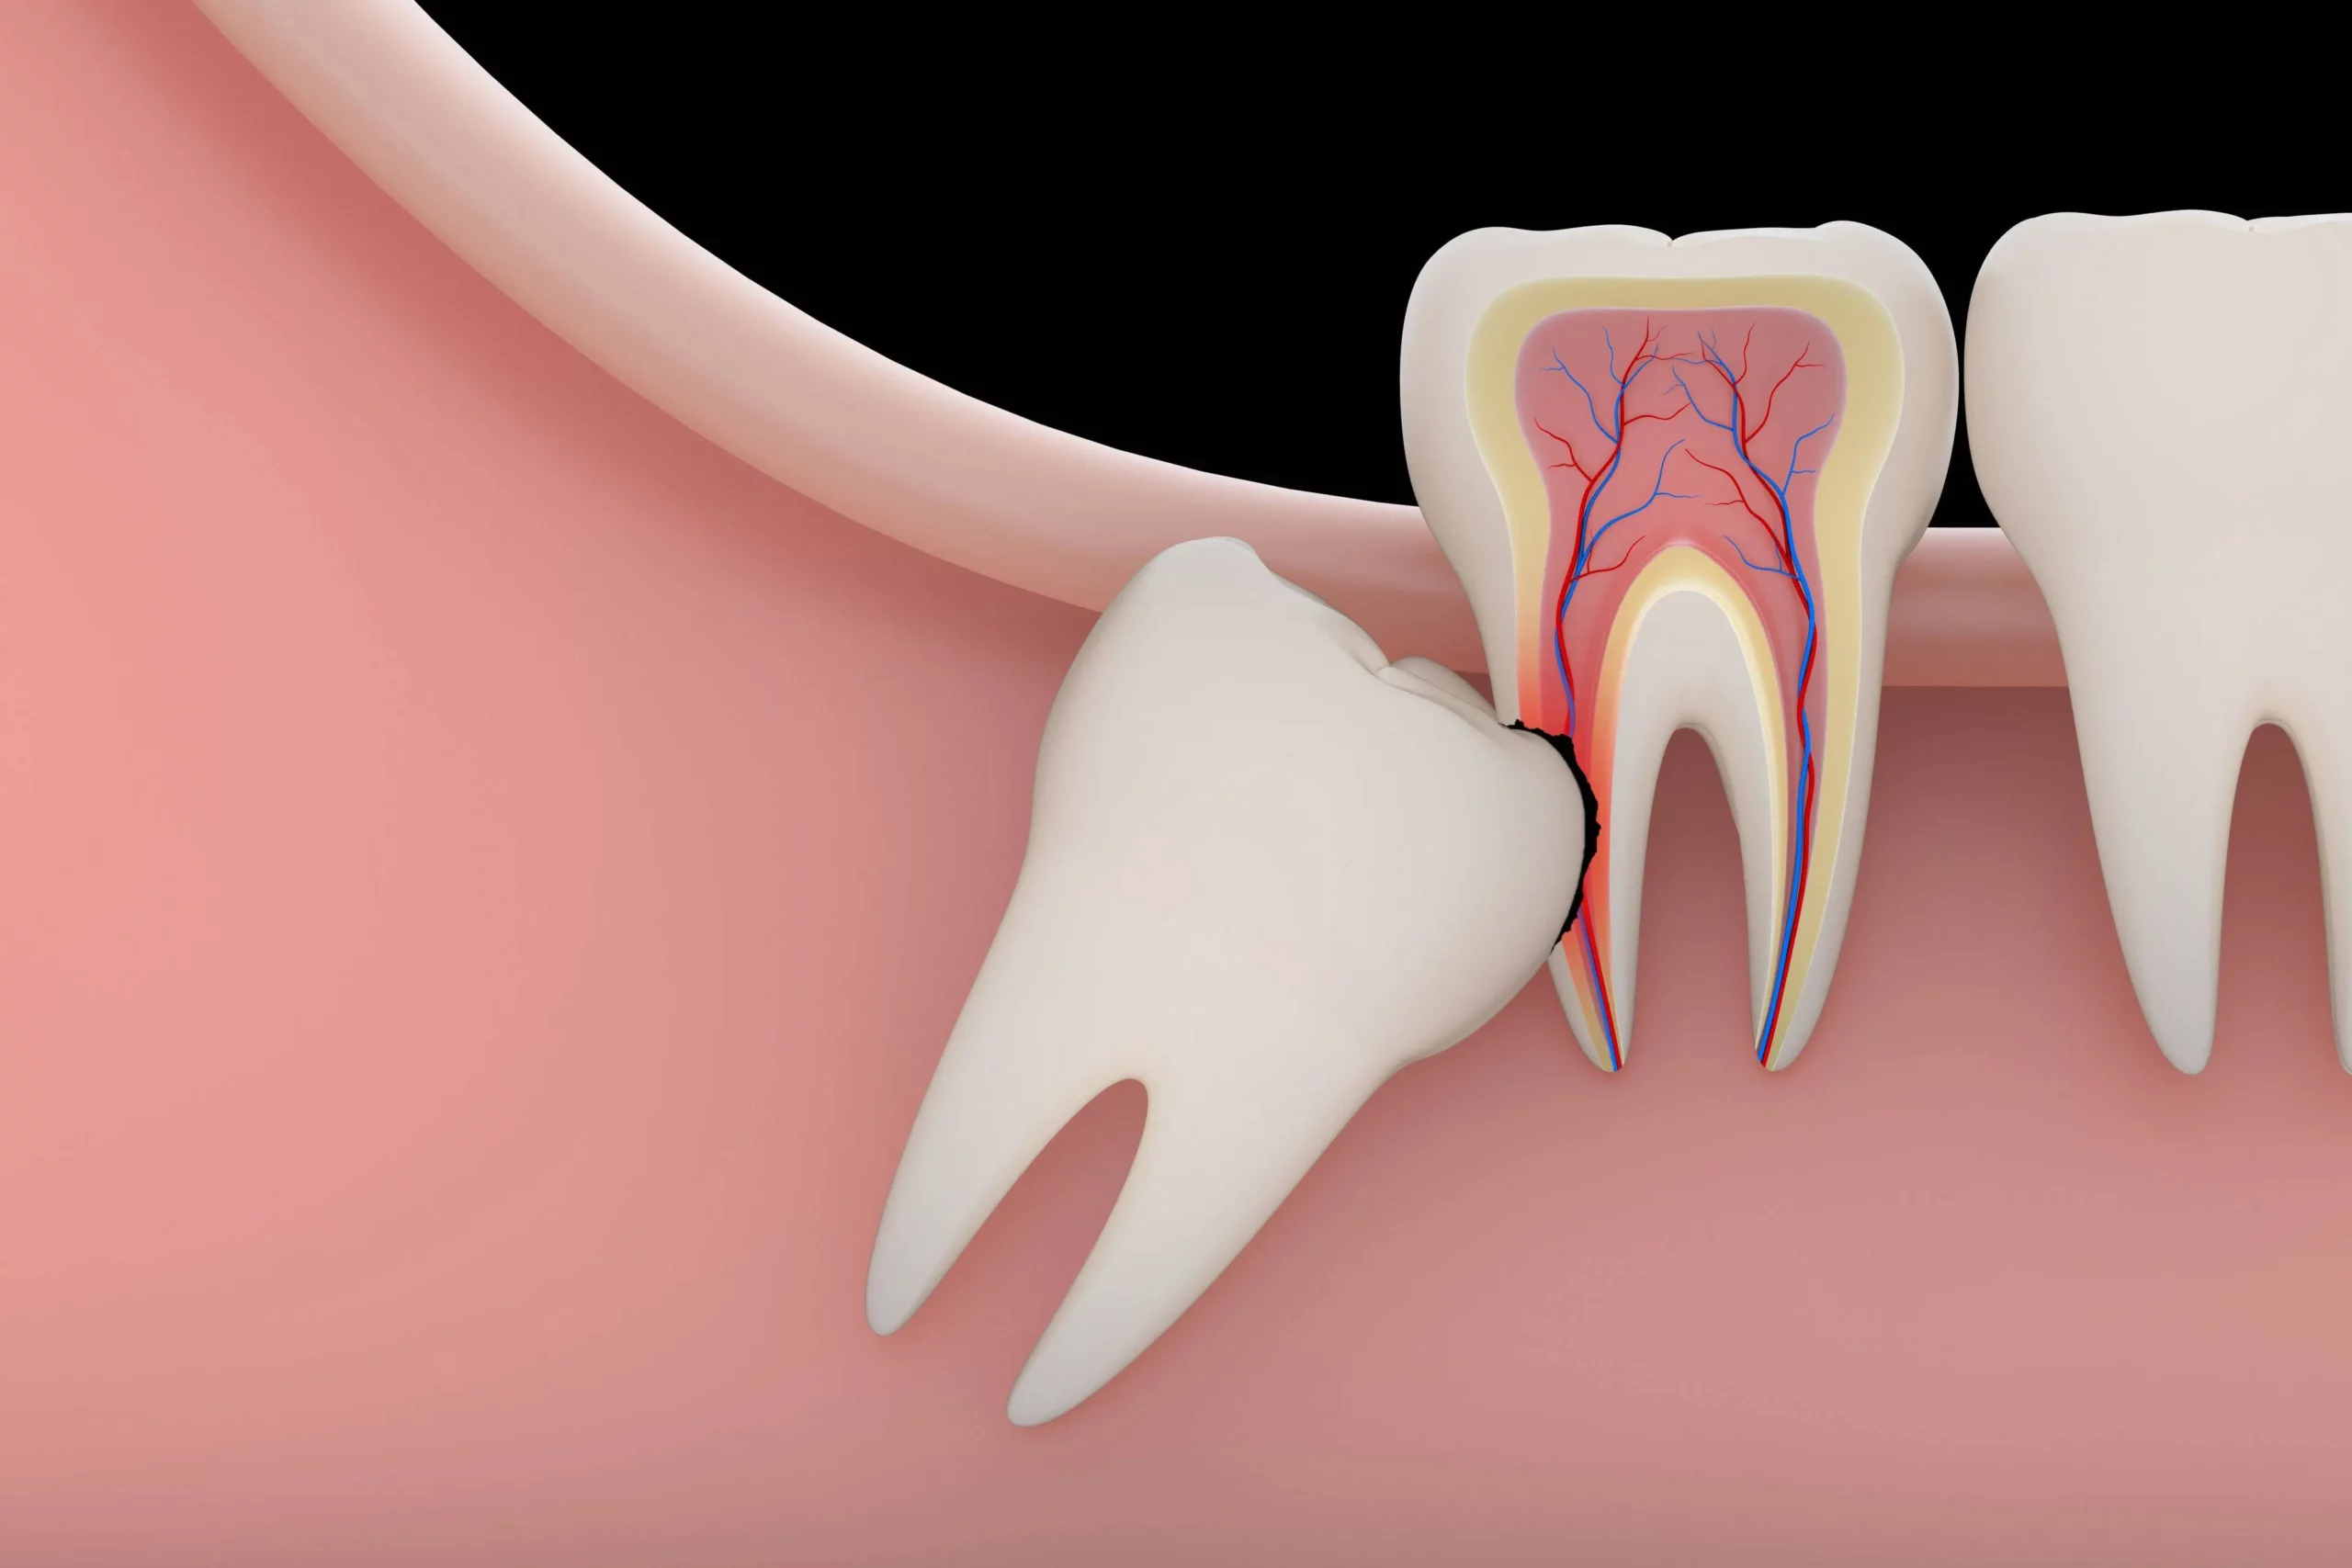 Удаление ретенированного зуба